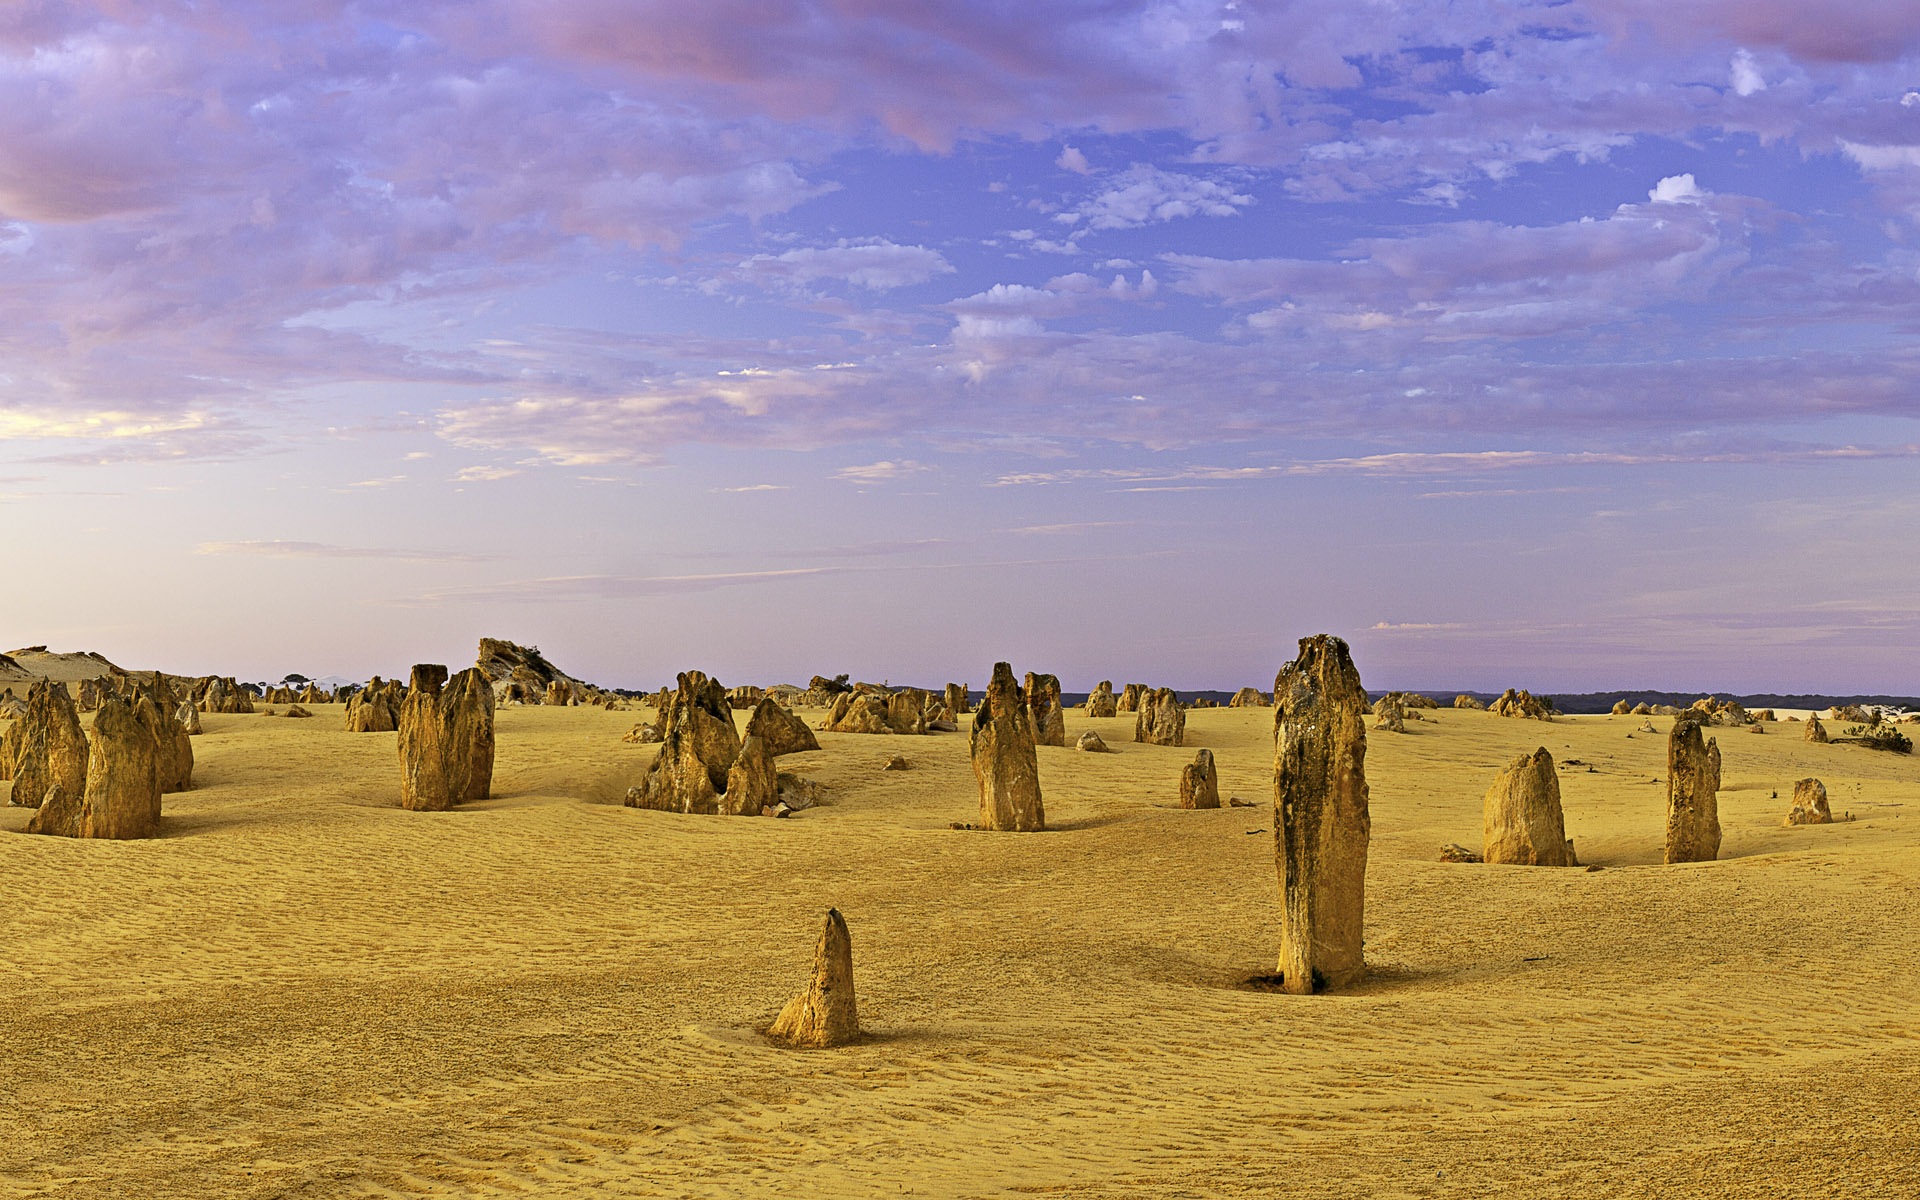 Les déserts chauds et arides, de Windows 8 fonds d'écran widescreen panoramique #8 - 1920x1200